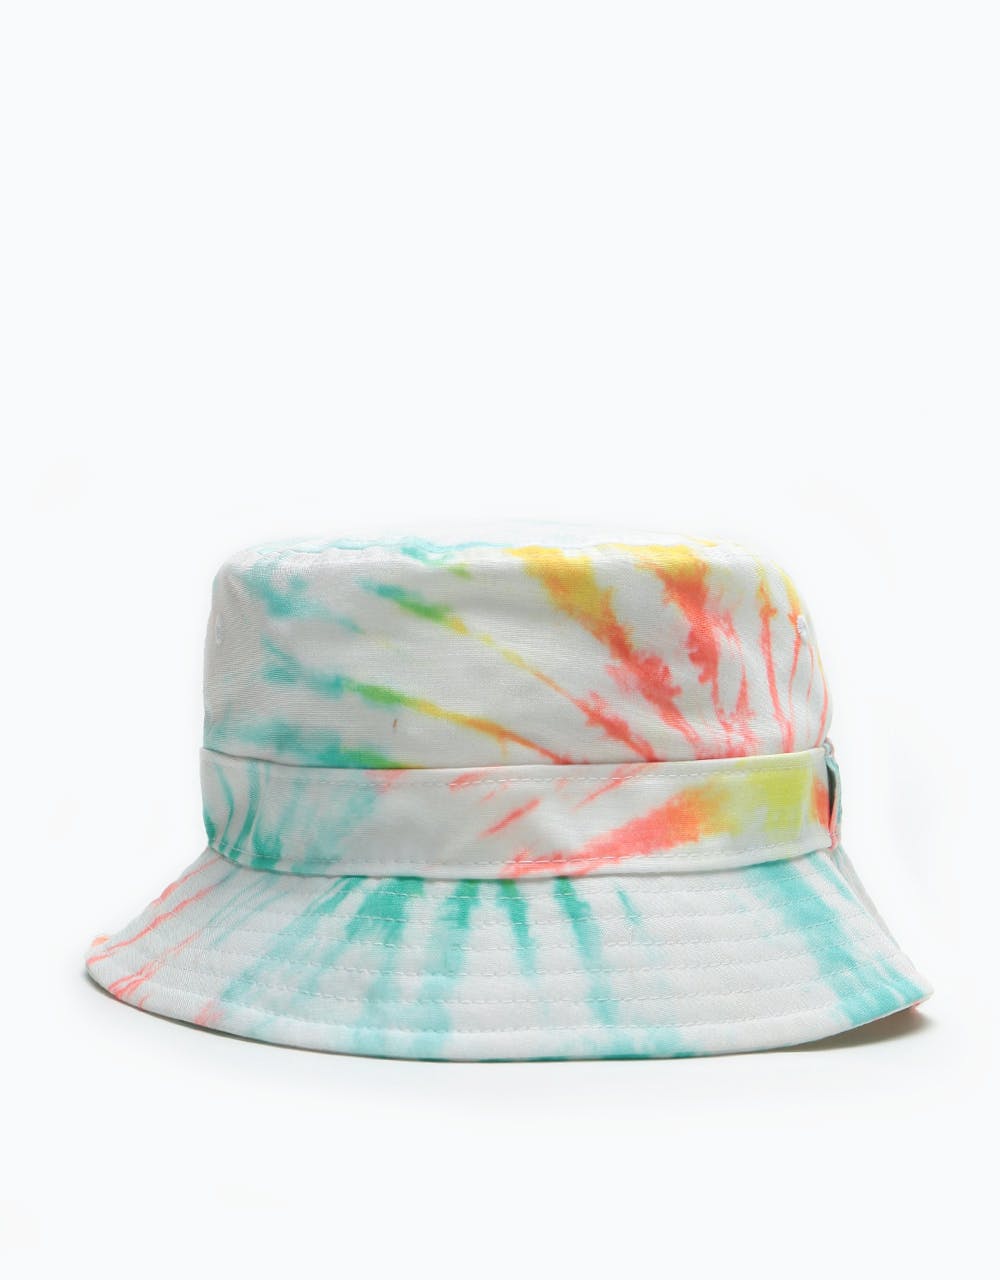 New Era Tie Dye Bucket Hat - Multi